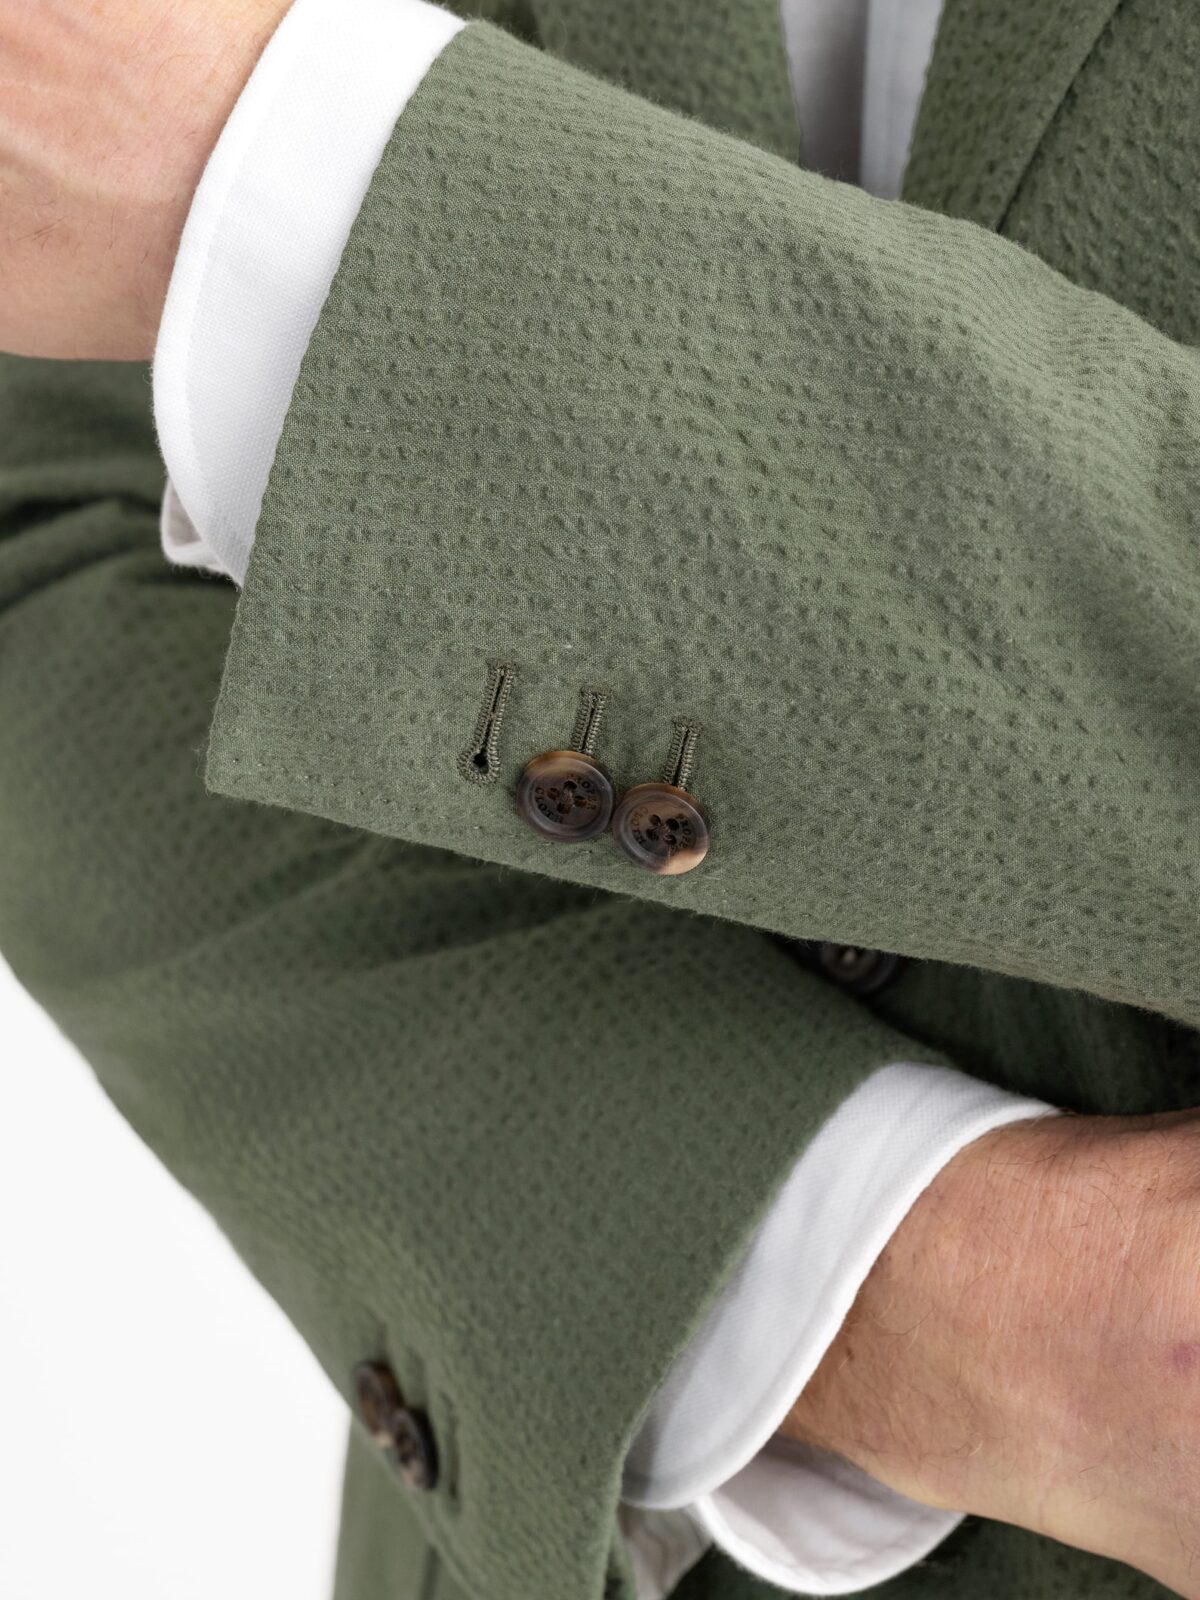 Cream Seersucker Suit with Brown Knit Tie